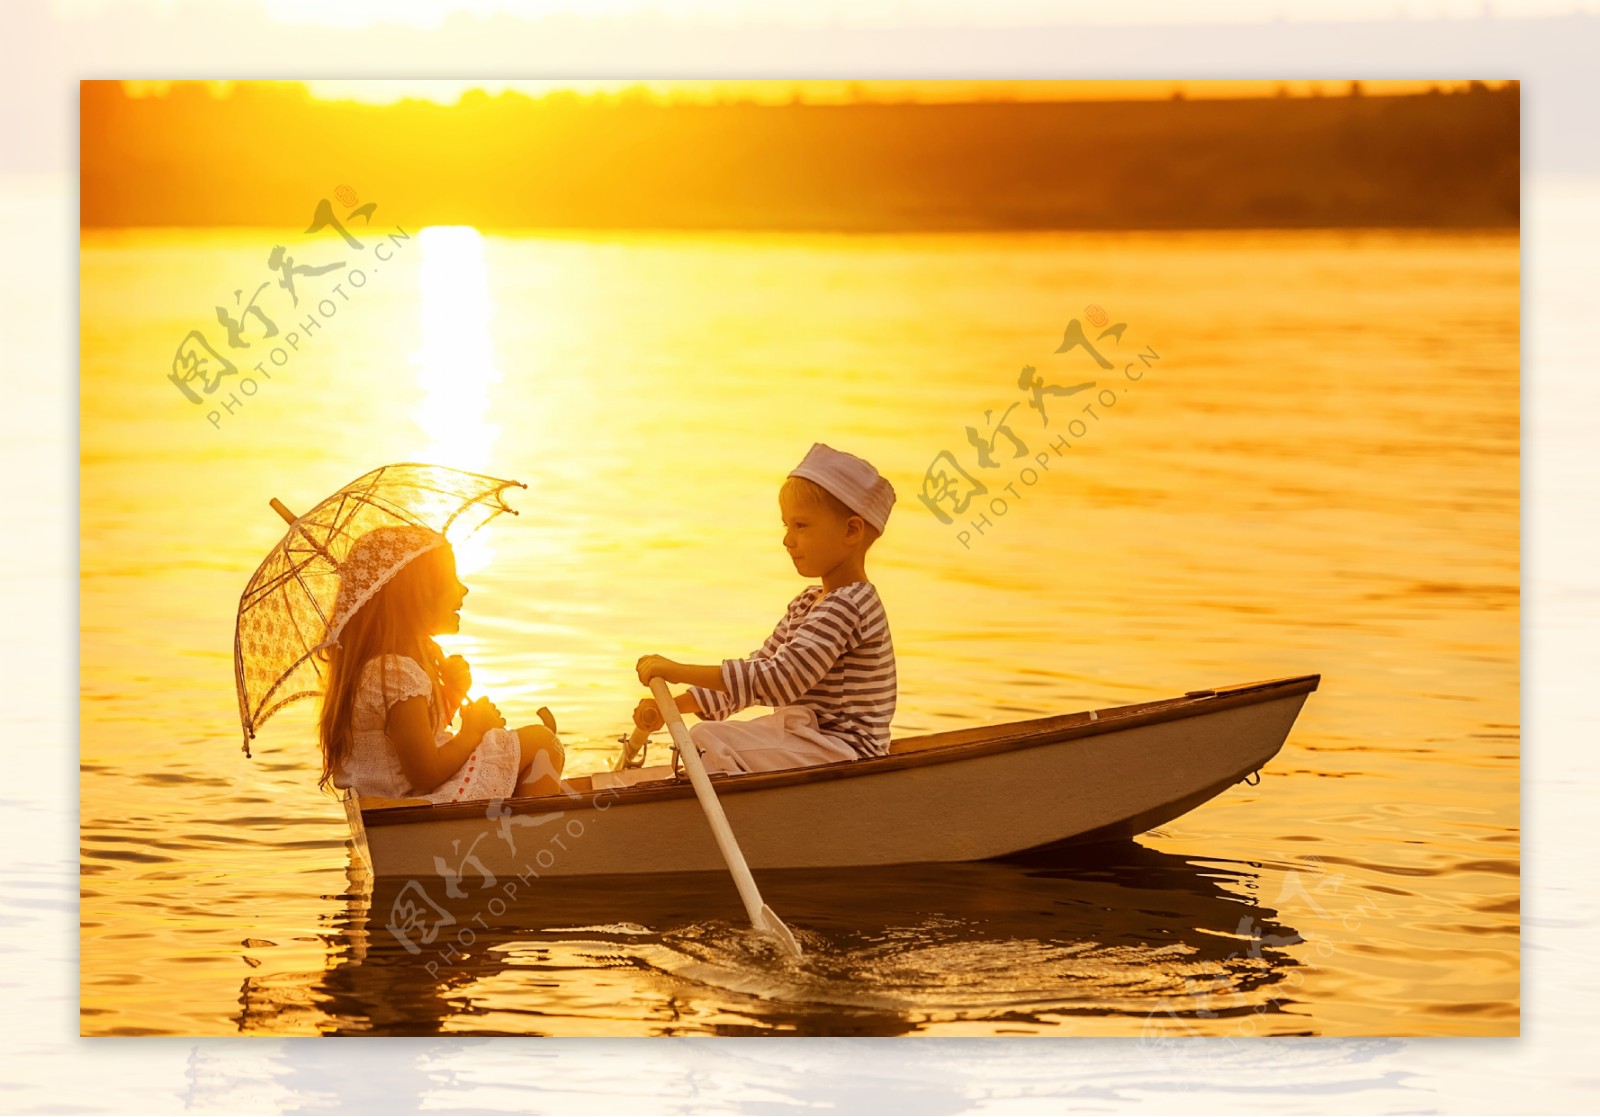 夕阳下正在划船的男孩女孩图片